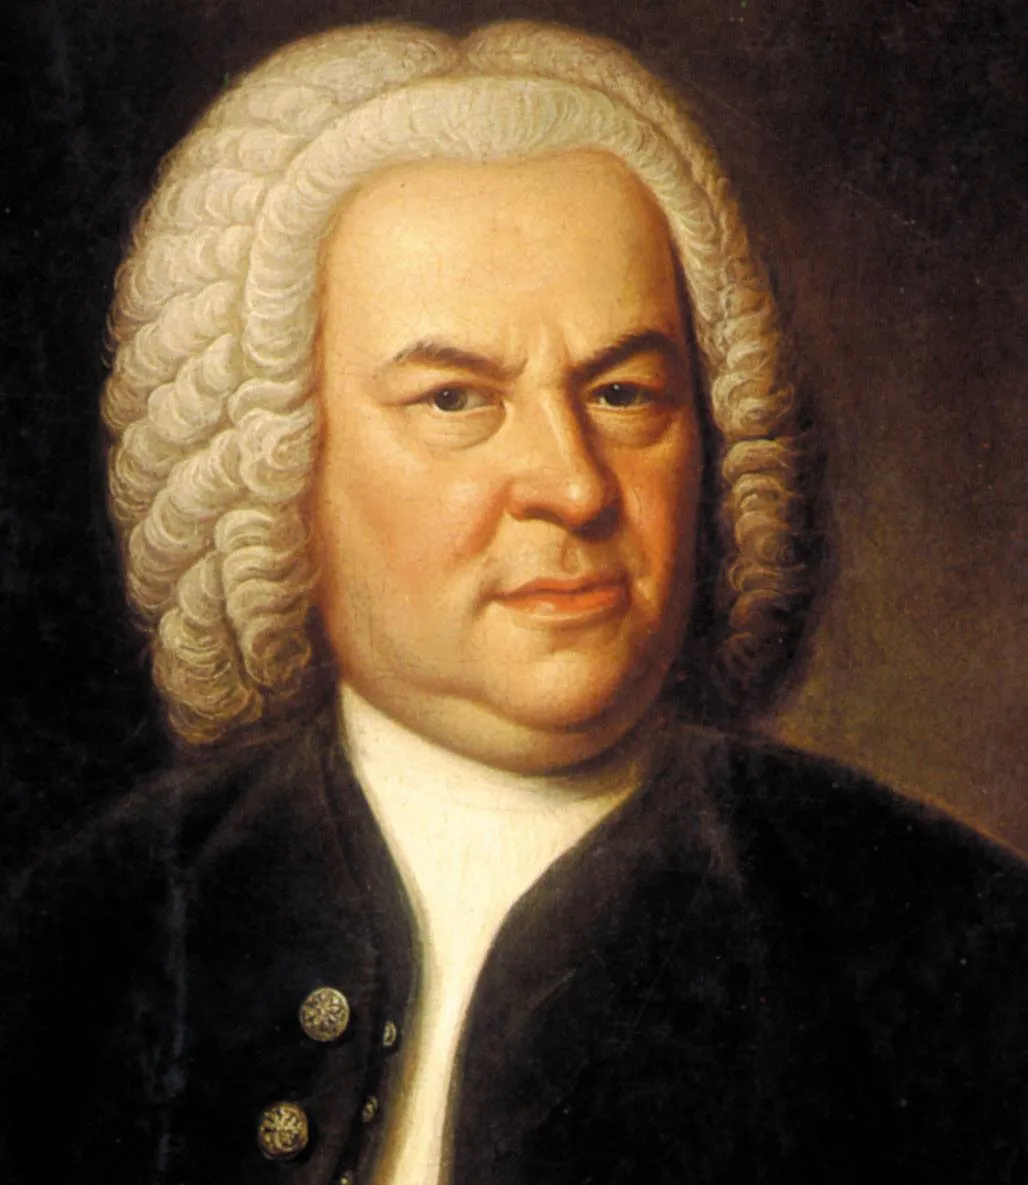 Johann Sebastian Bach là nhà soạn nhạc người Đức ở thời kỳ Baroque, được xem là một trong những nhà soạn nhạc có ảnh hưởng nhiều nhất trong nền âm nhạc châu Âu.